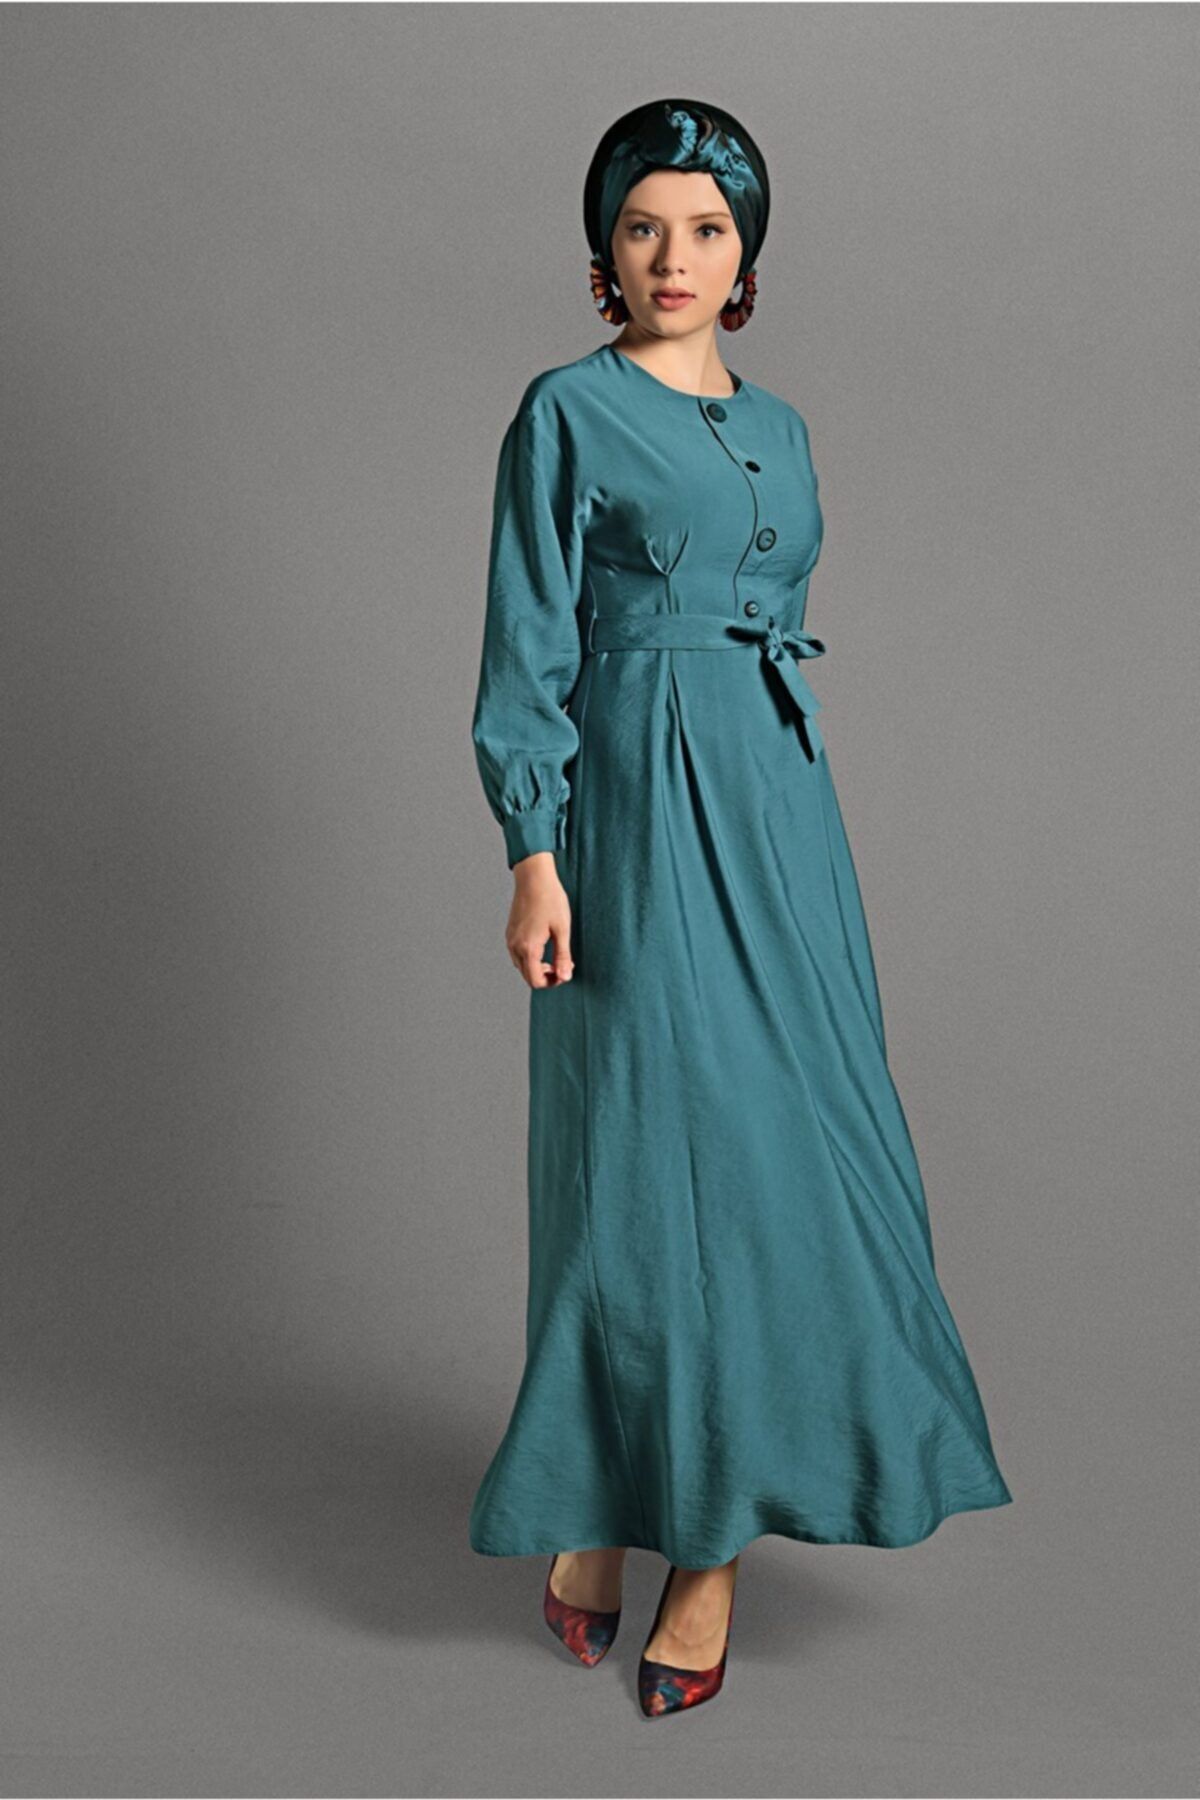 TRENDTESETTÜR Kadın Mavi (TURKUAZ) Düğme Detaylı Elbise 6244